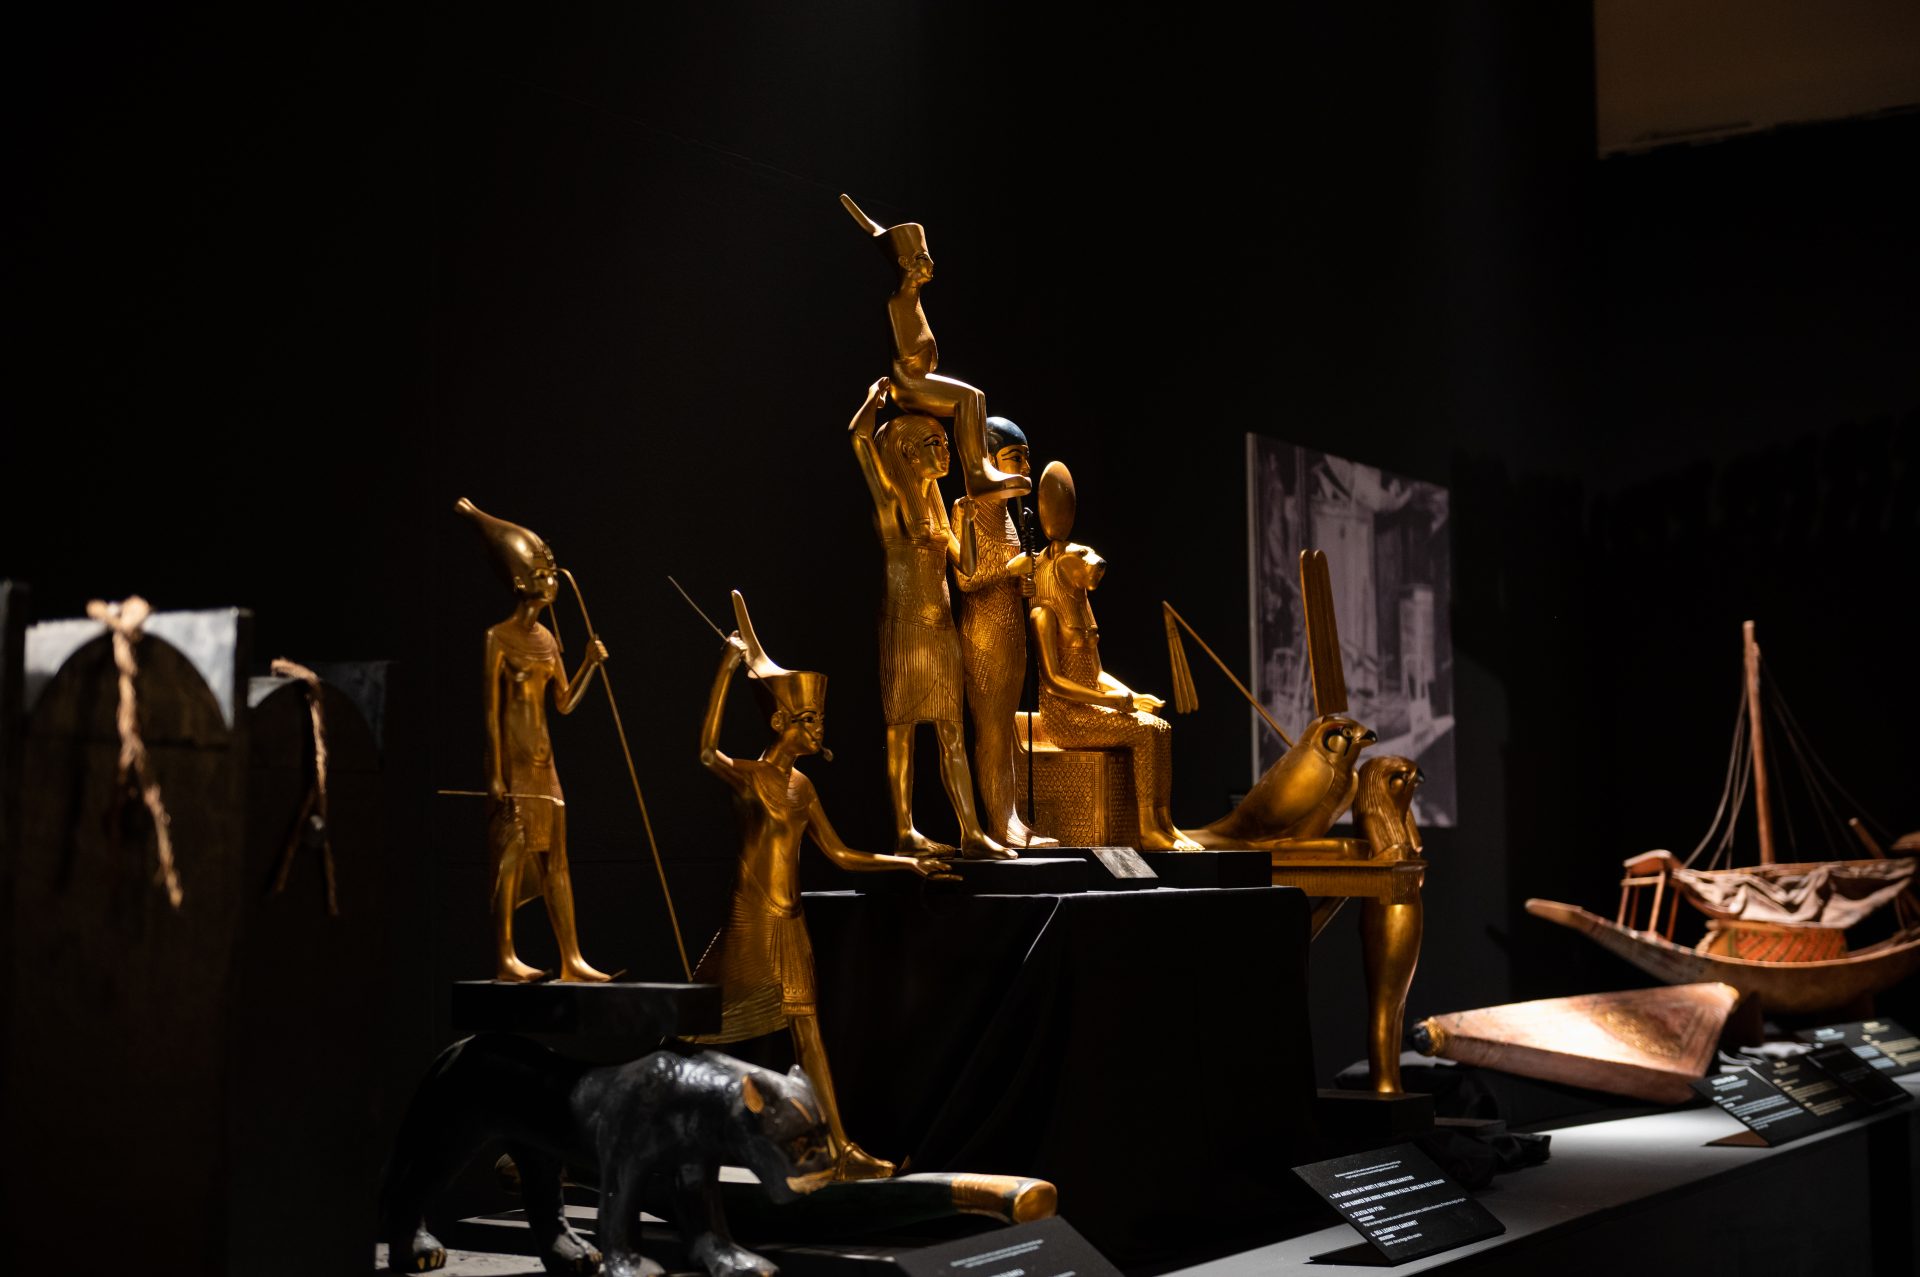 Il sindaco di Napoli Gaetano Manfredi in visita alla mostra “Tutankhamon - viaggio verso l’eternità”